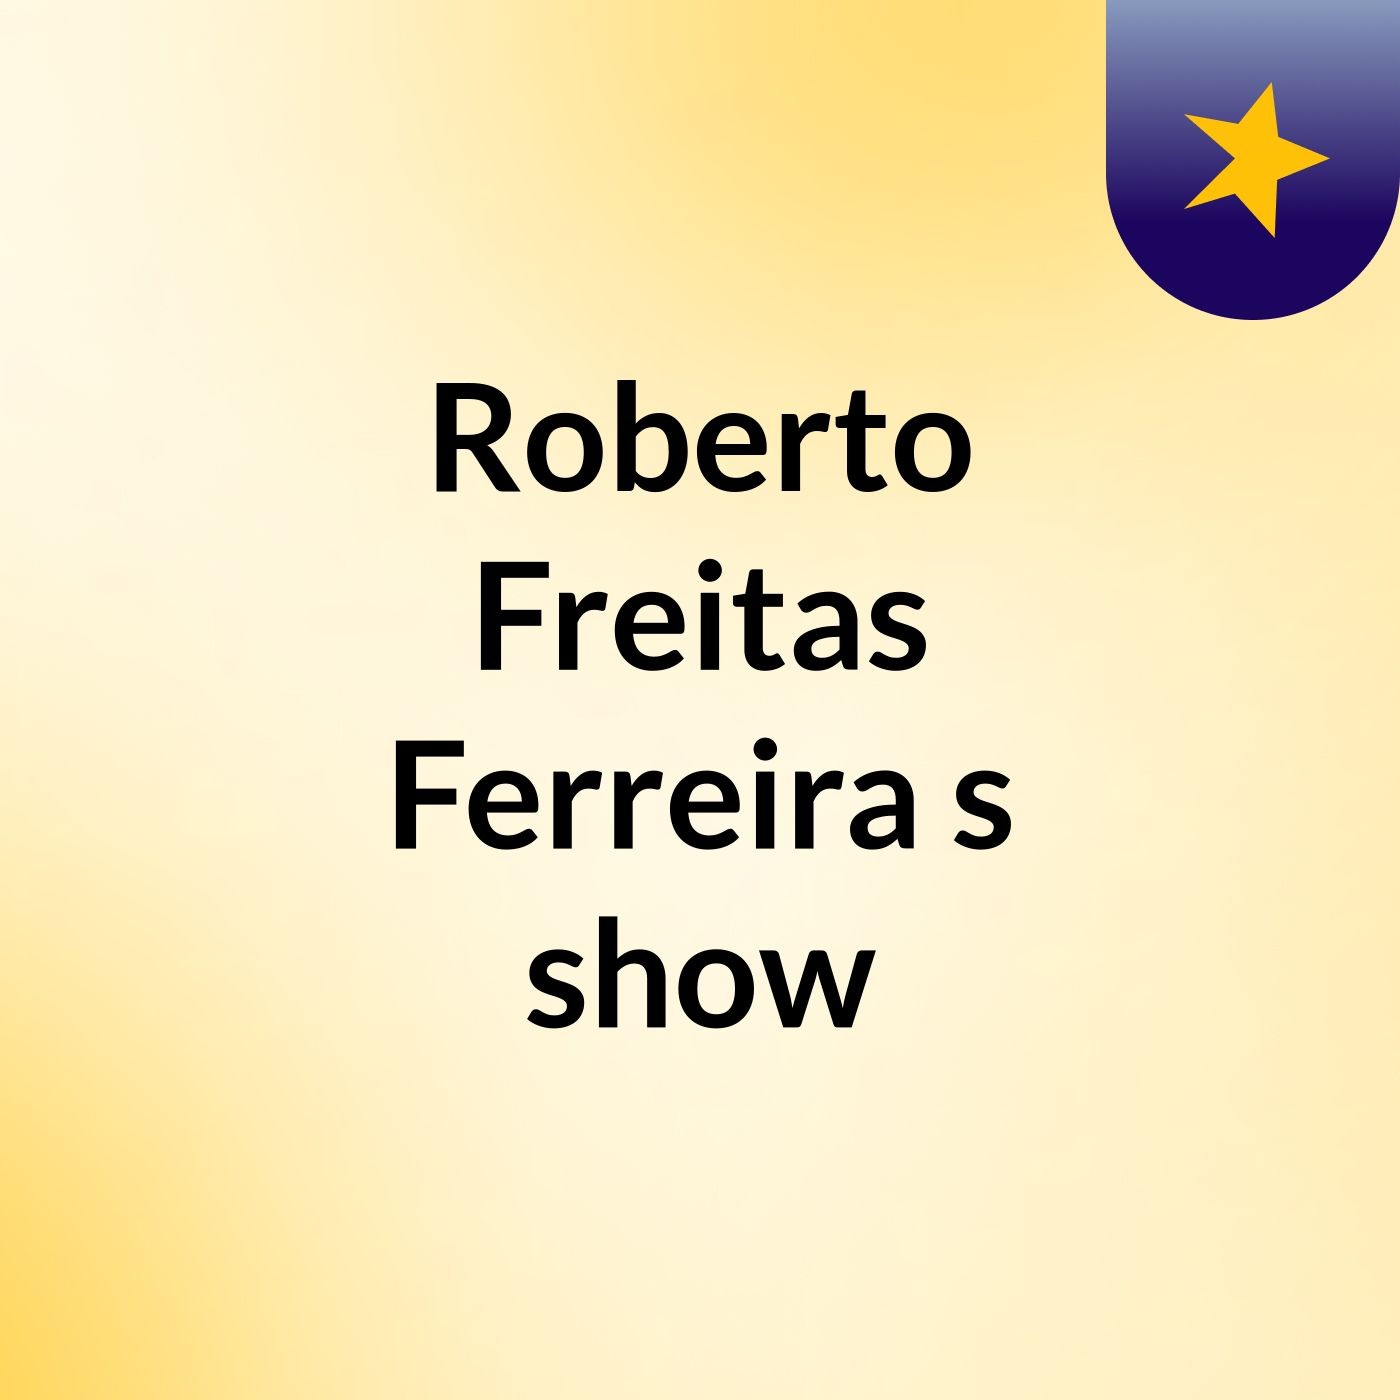 Roberto Freitas Ferreira's show